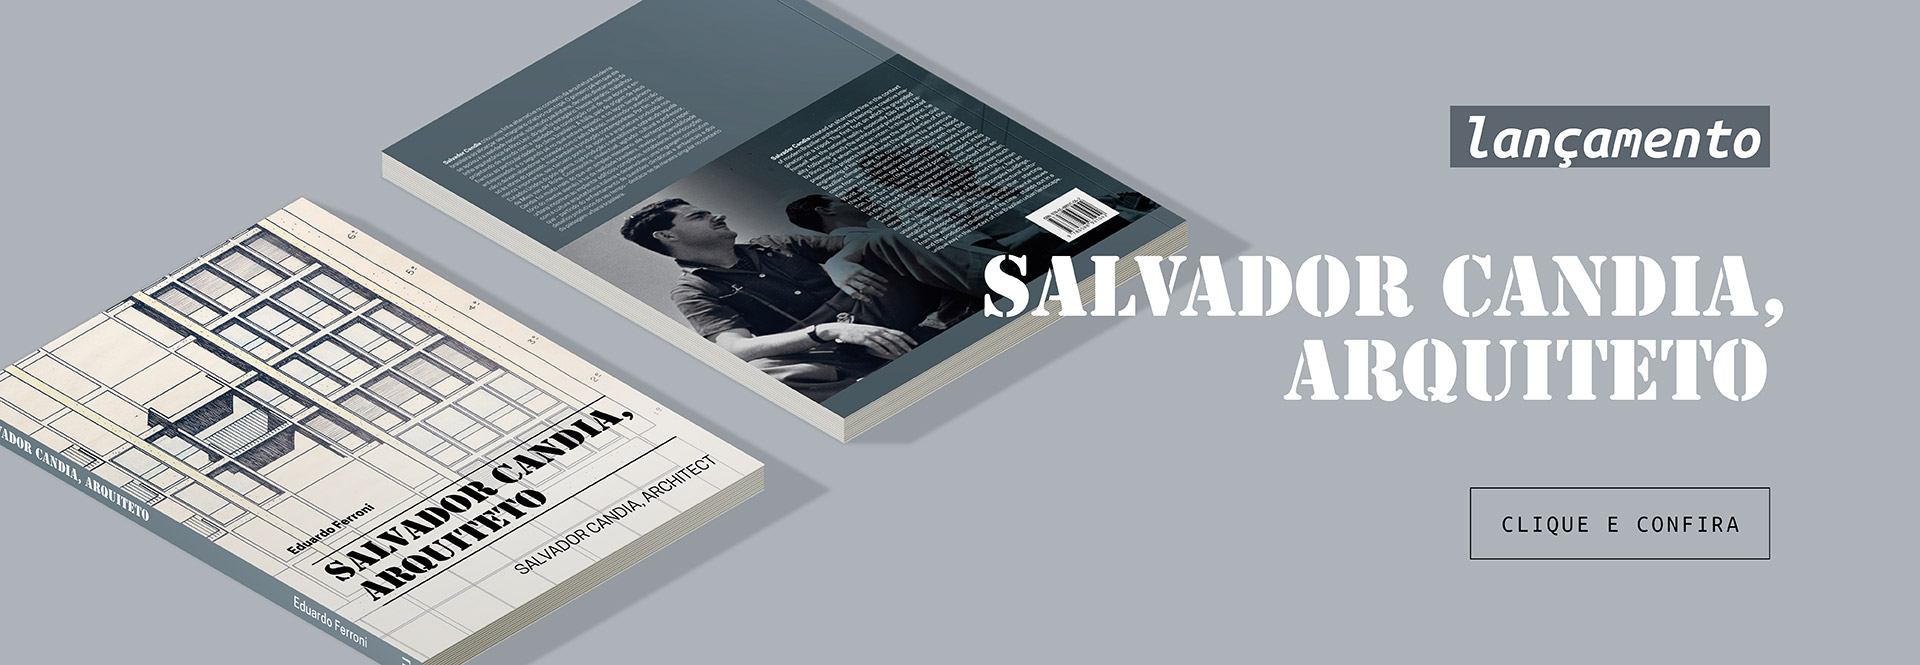 Slider desktop 9 – Salvador Candia, arquiteto